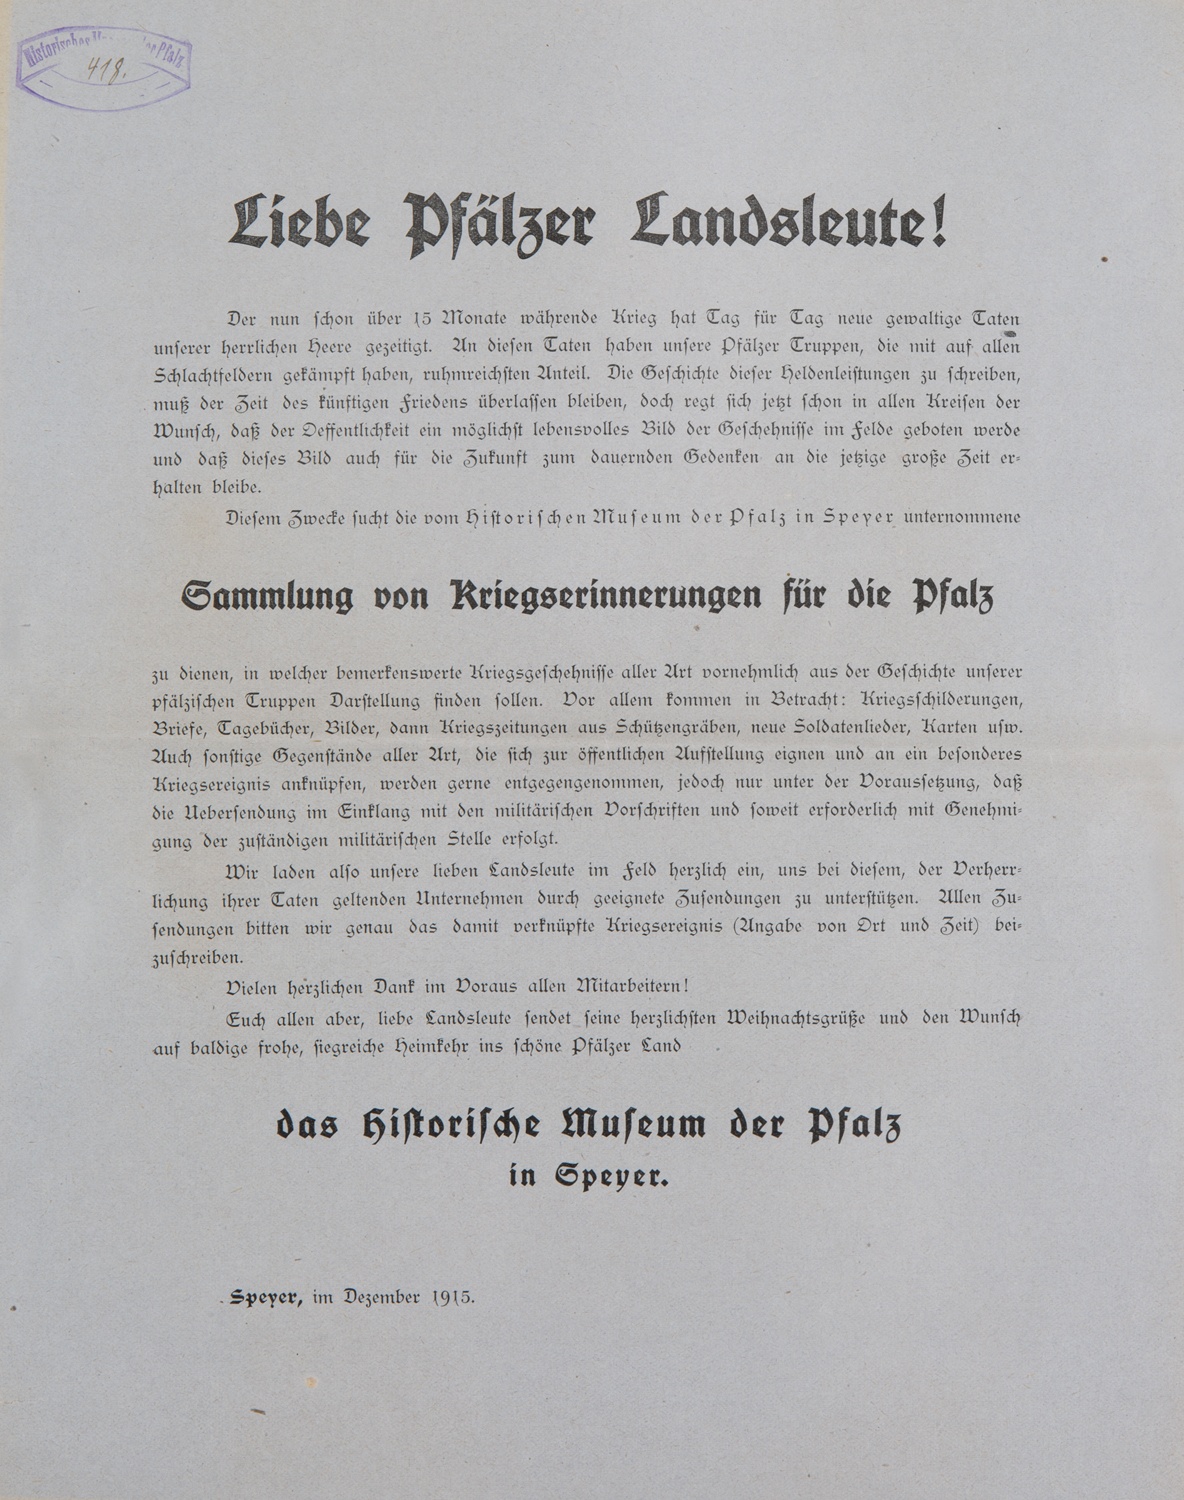 Sammlungsaufruf "Sammlung von Kriegserinnerungen für die Pfalz" (Historisches Museum der Pfalz, Speyer CC BY)